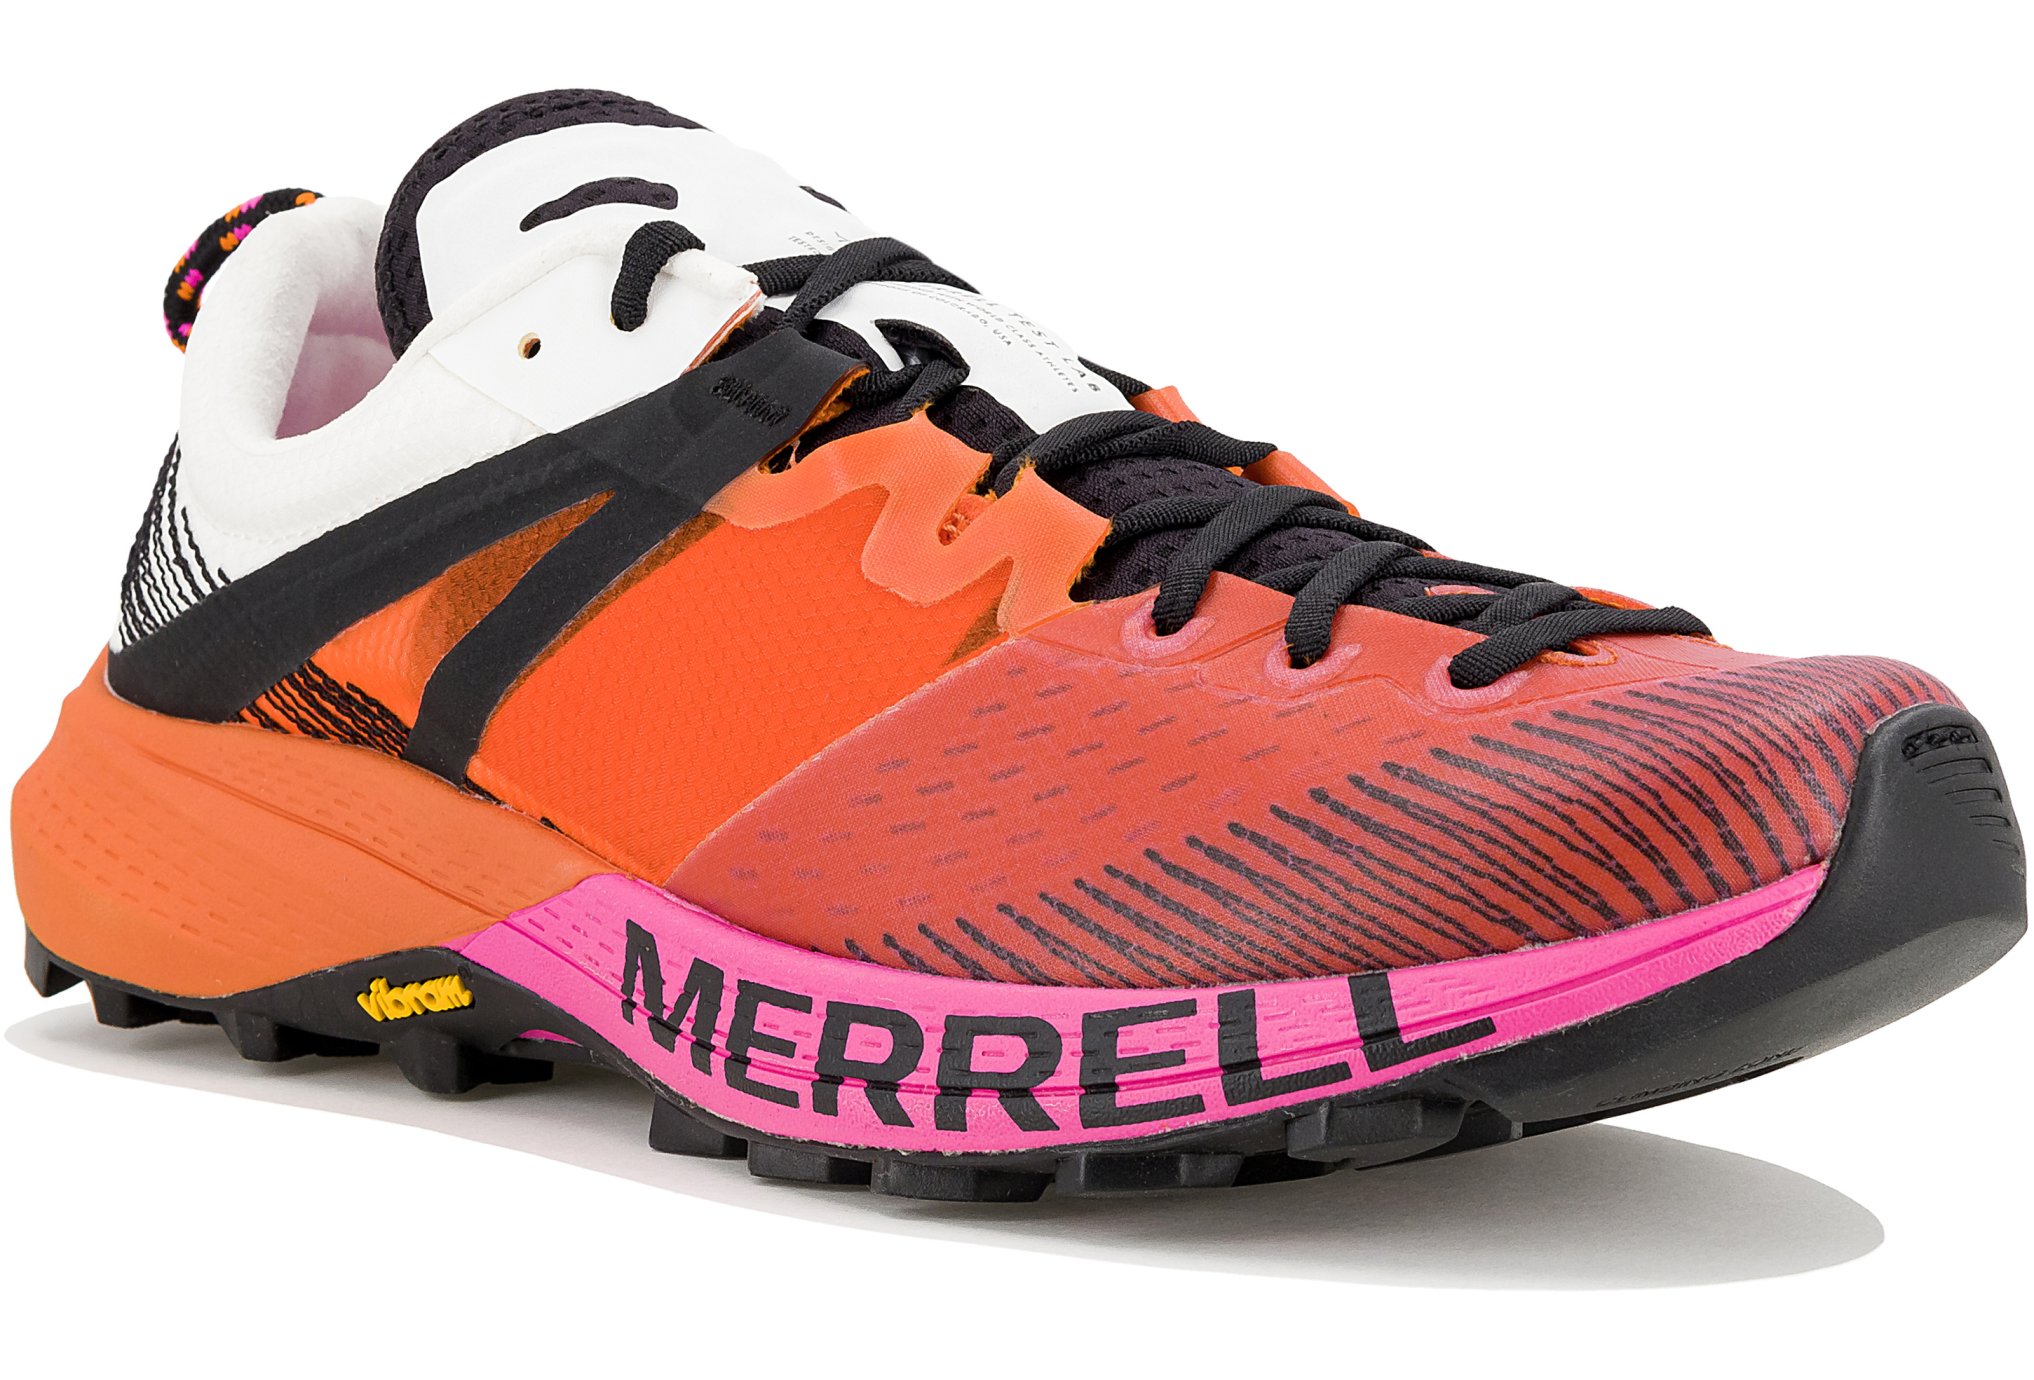 Merrell MTL MQM W Chaussures de sport femme